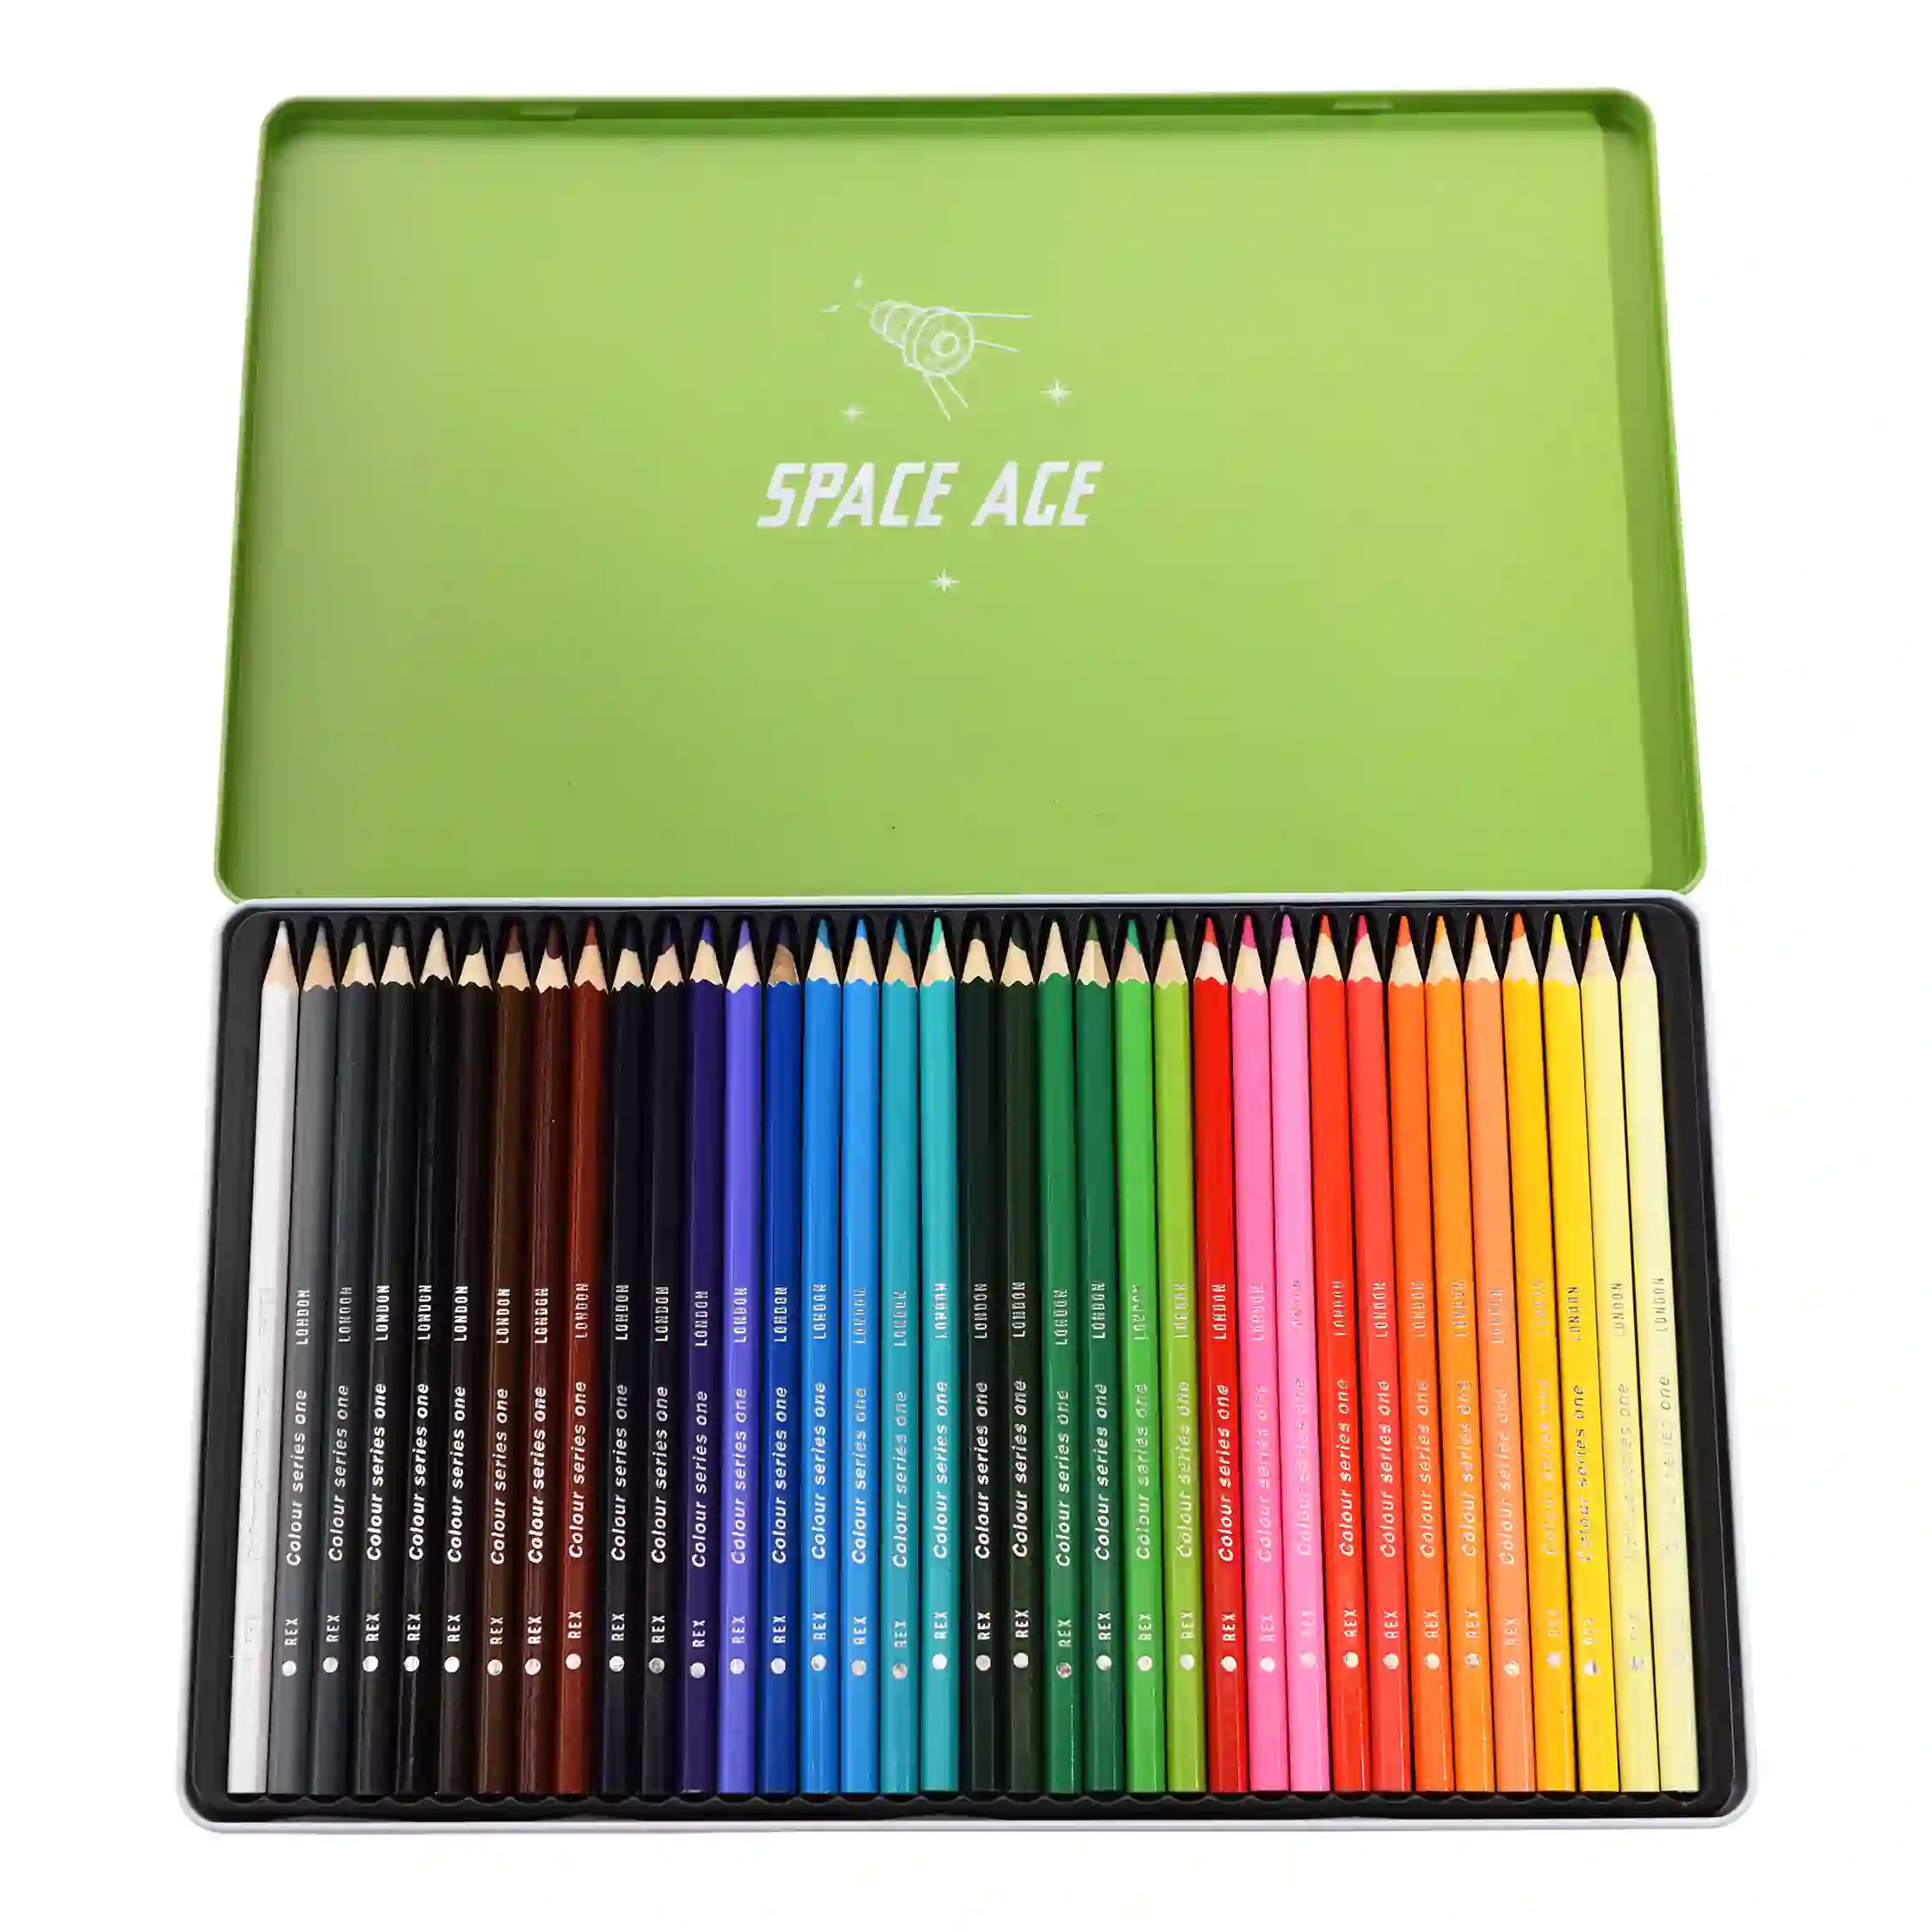 36 lápices para colorear en una lata space age